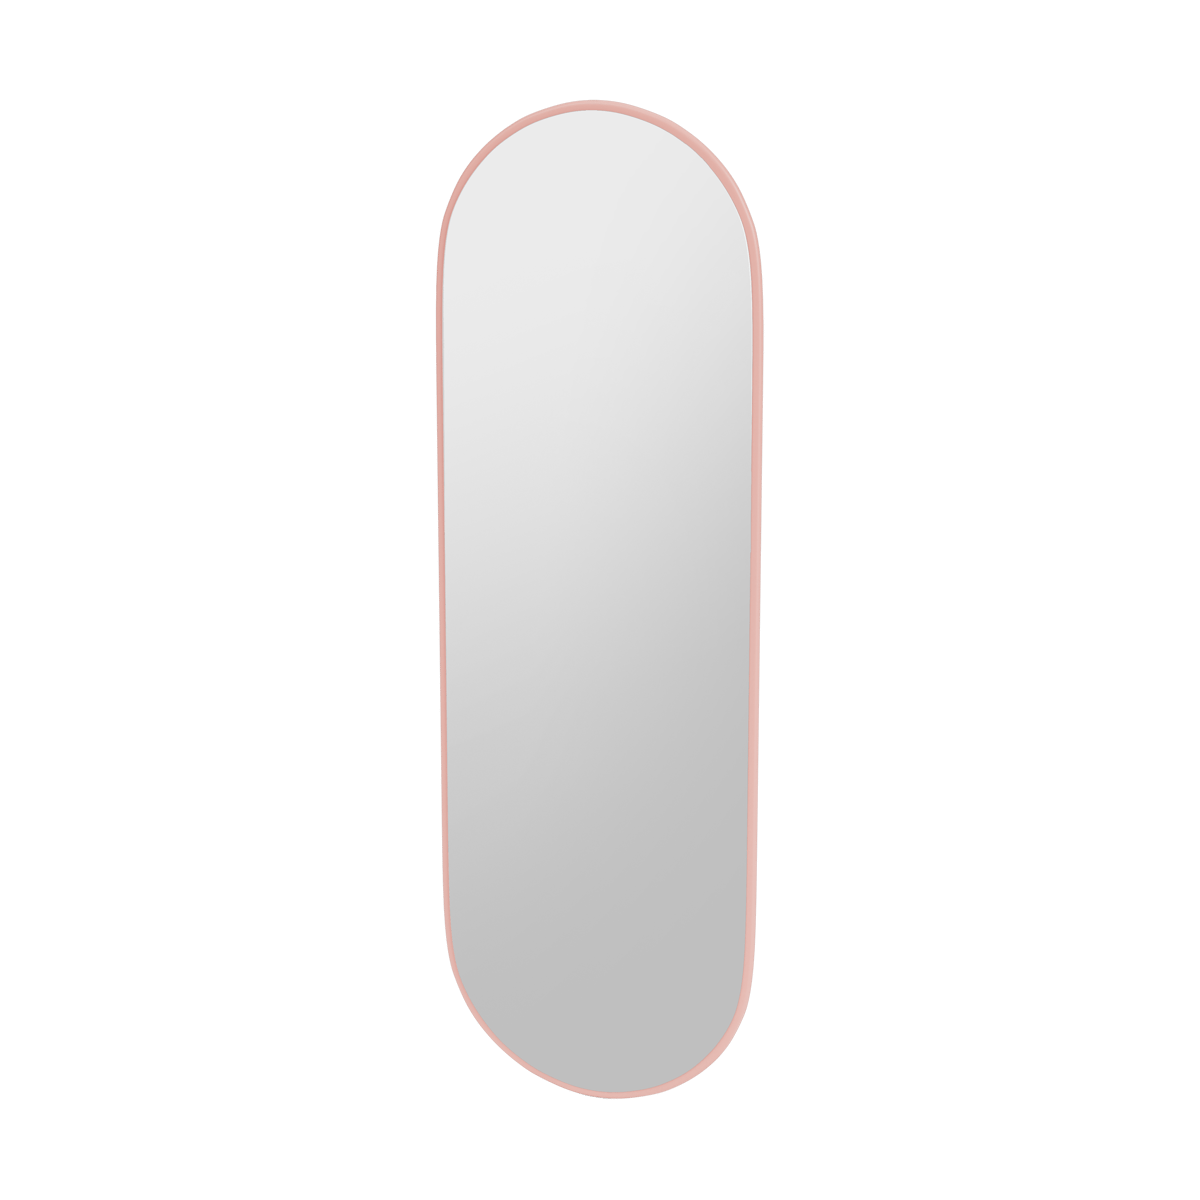 Montana FIGUUR Mirror Spiegel - SP824R Ruby